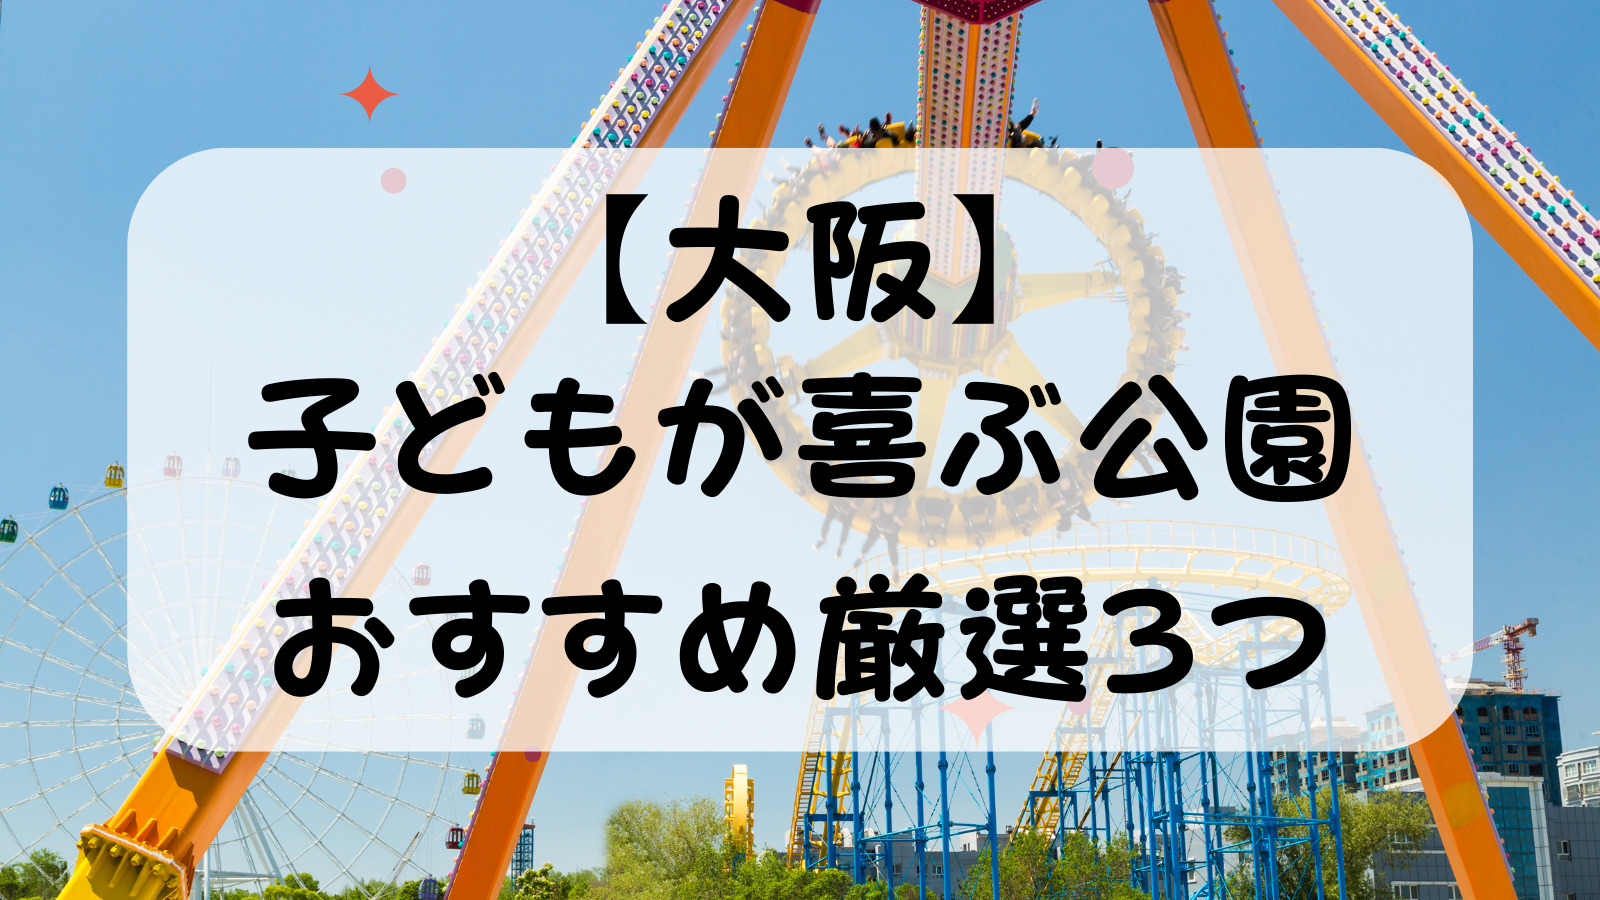 【大阪】子どもが喜ぶ公園おすすめ厳選3つ